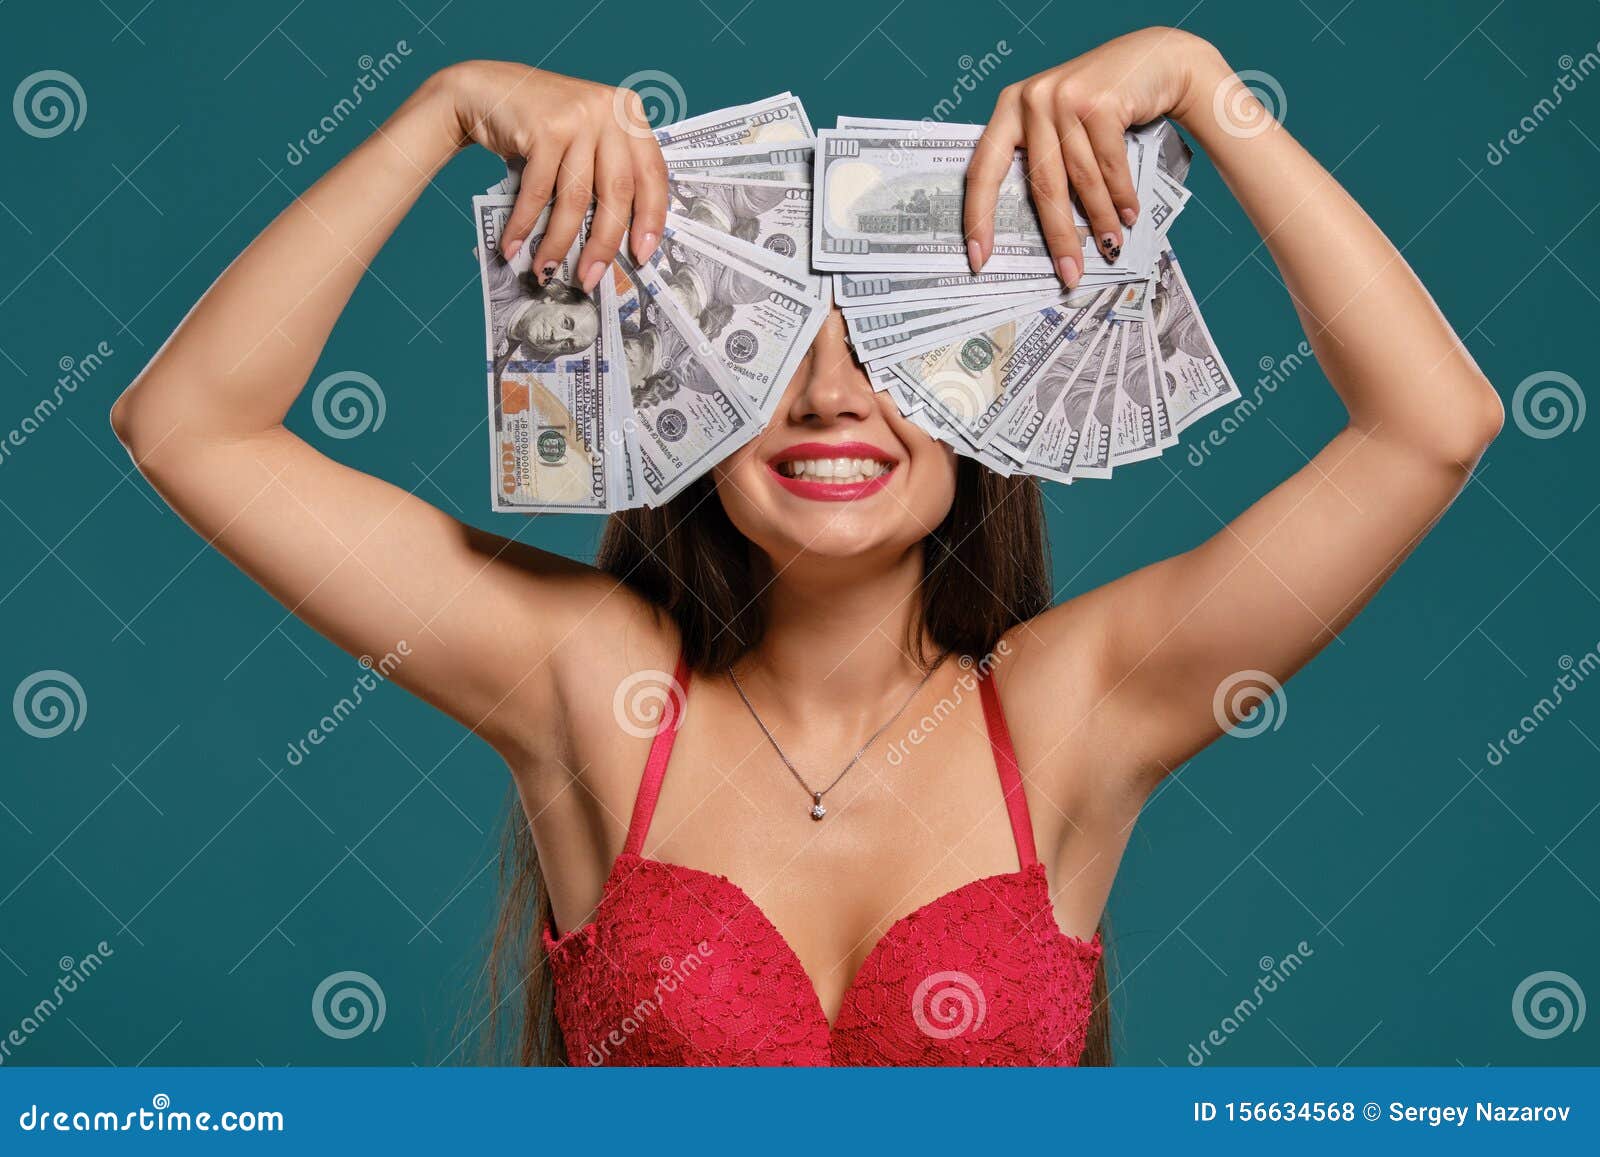 Sexy Female Money